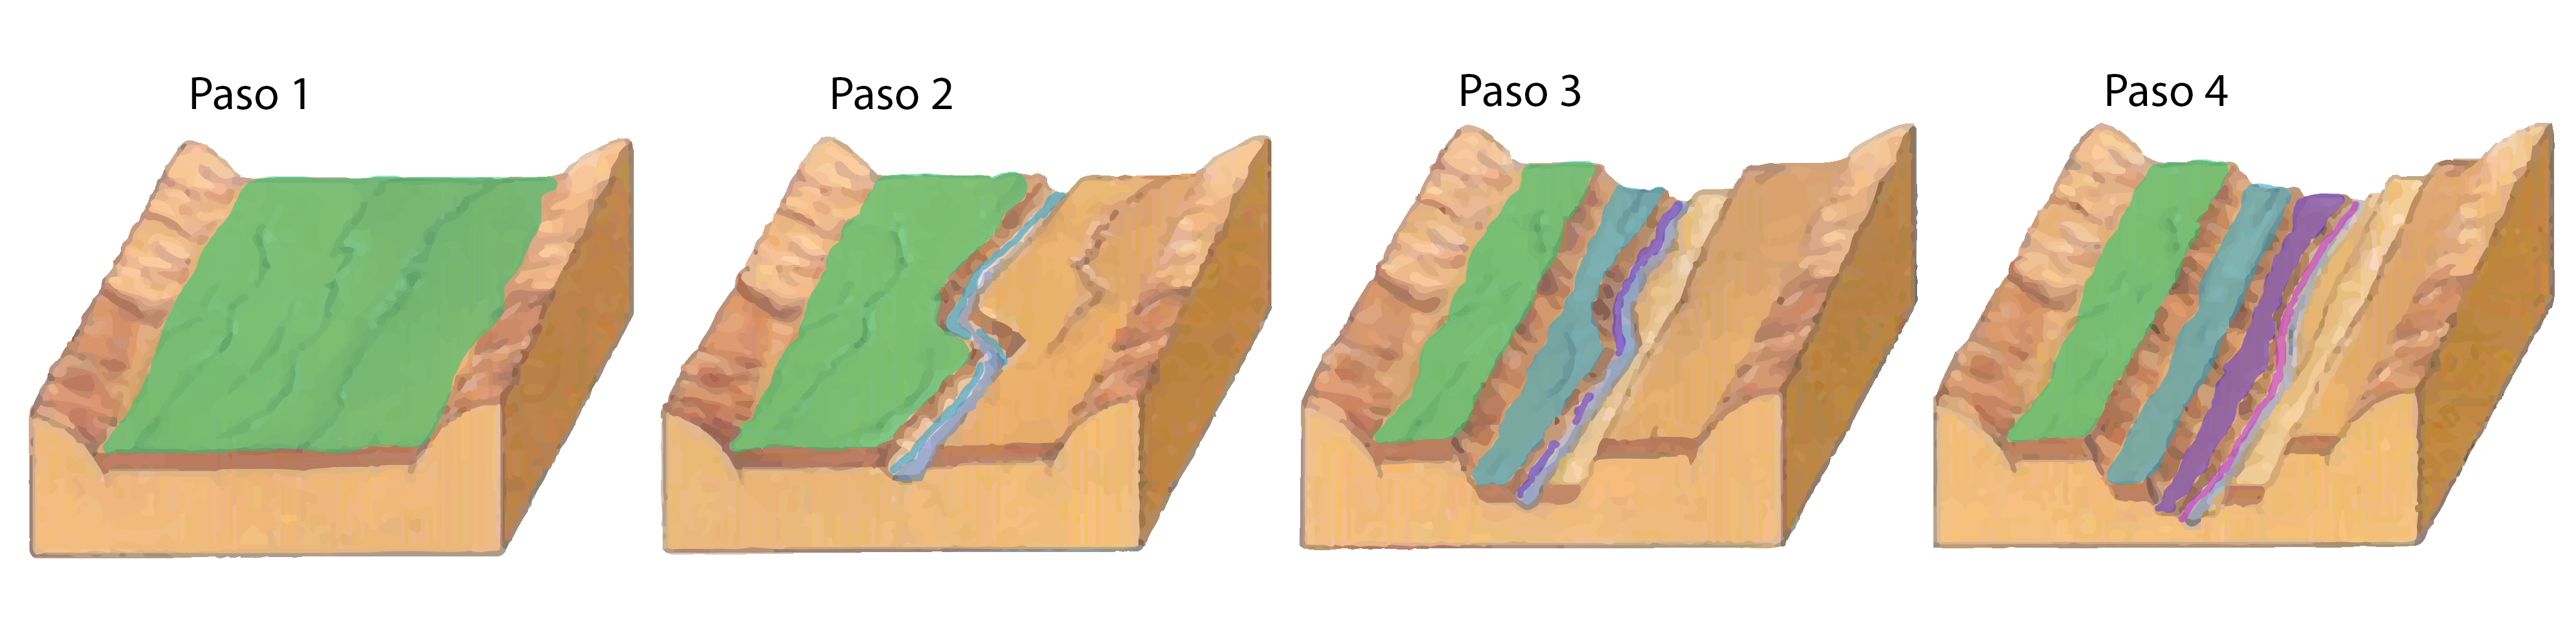 Modelo de formación de terrazas fluviales